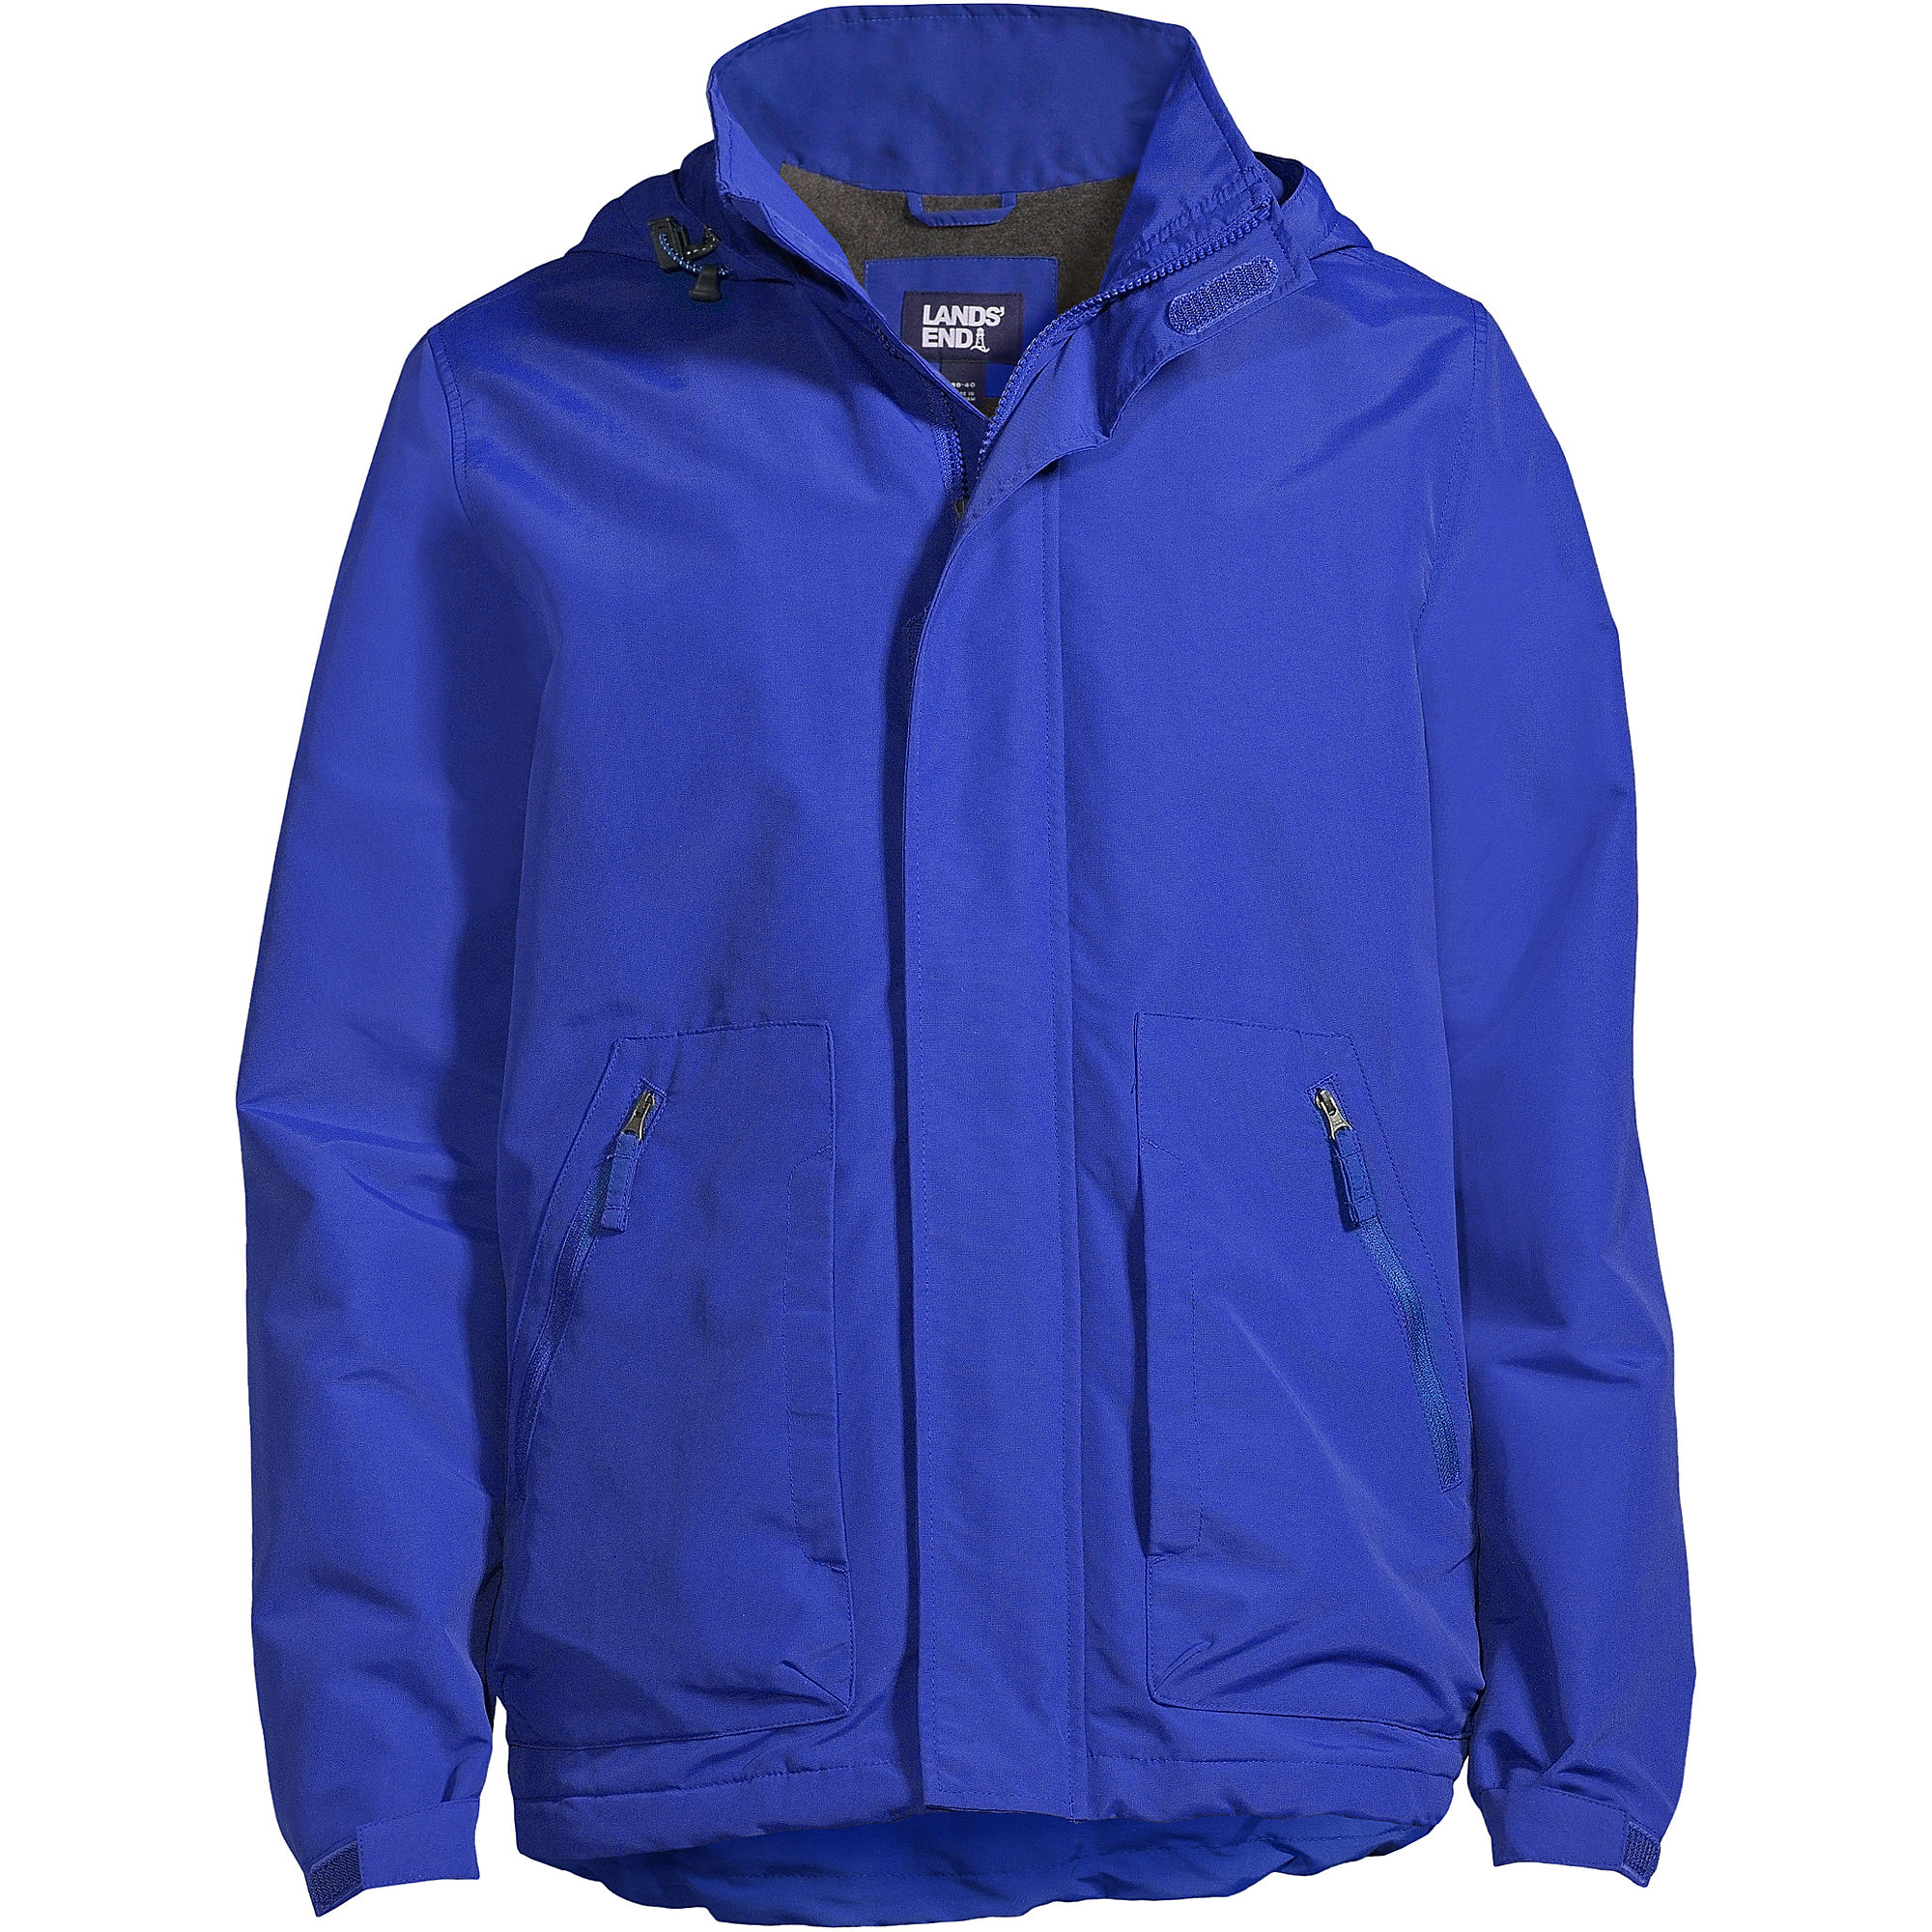 Lands End Men's Big Outrigger Fleece Lined Jacket (3 colors)